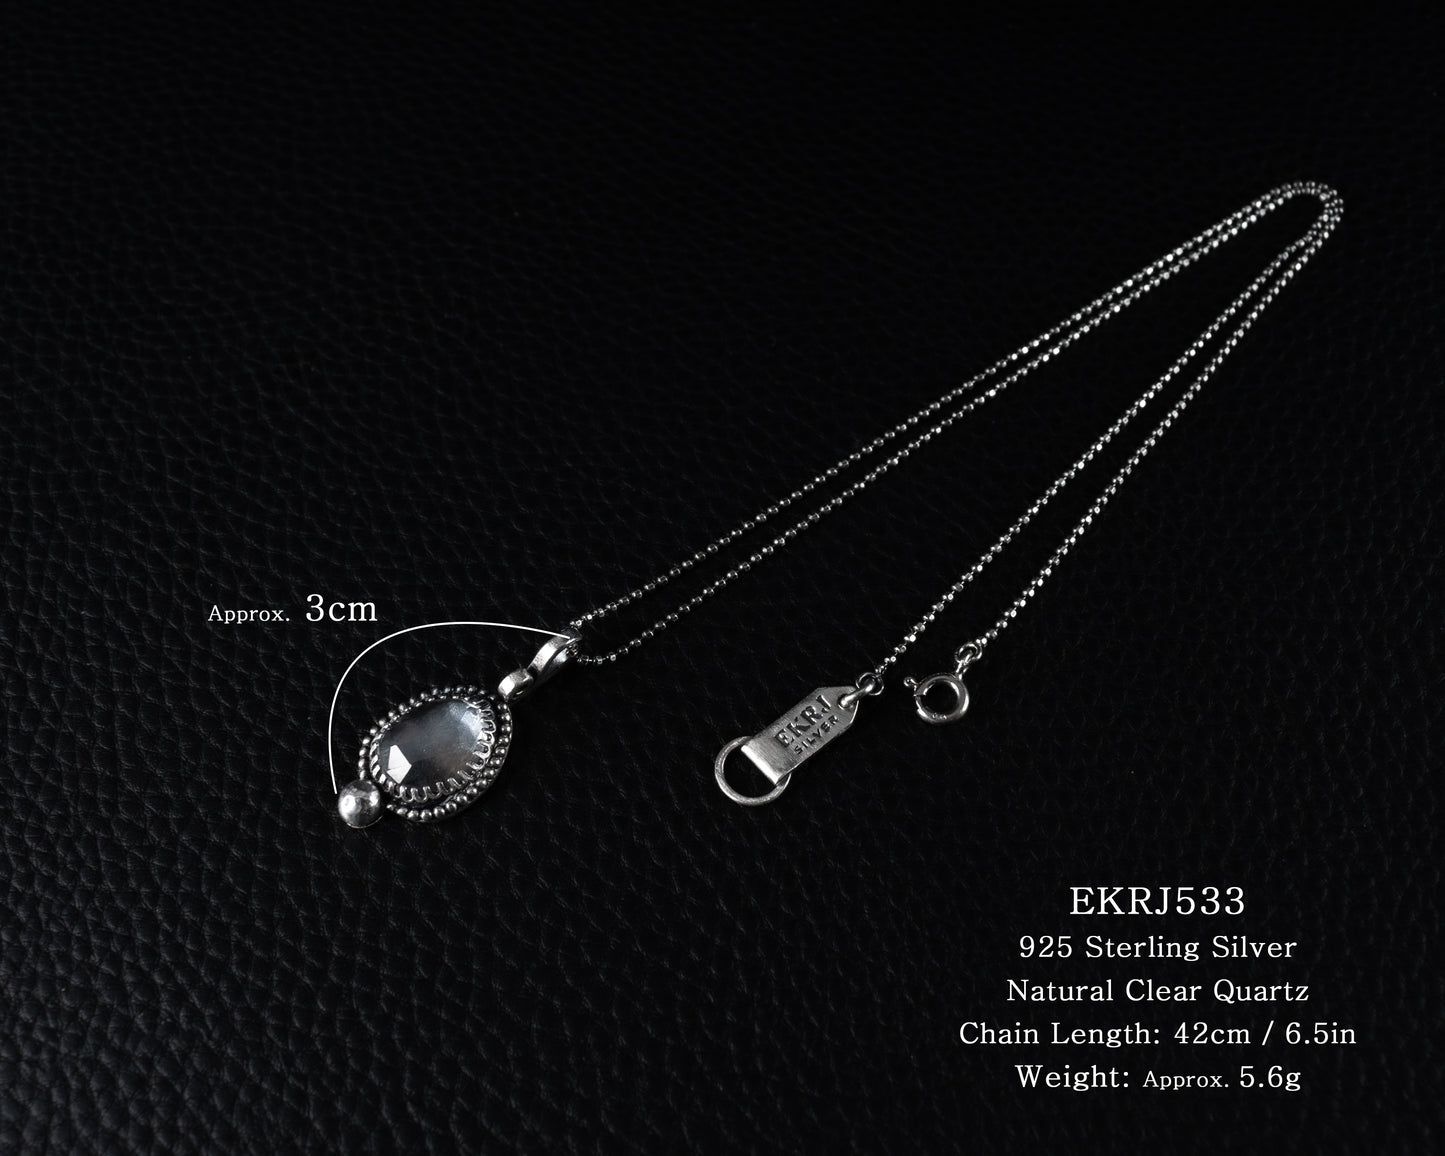 EKRJ533 Natural Clear Quartz Silver Necklace